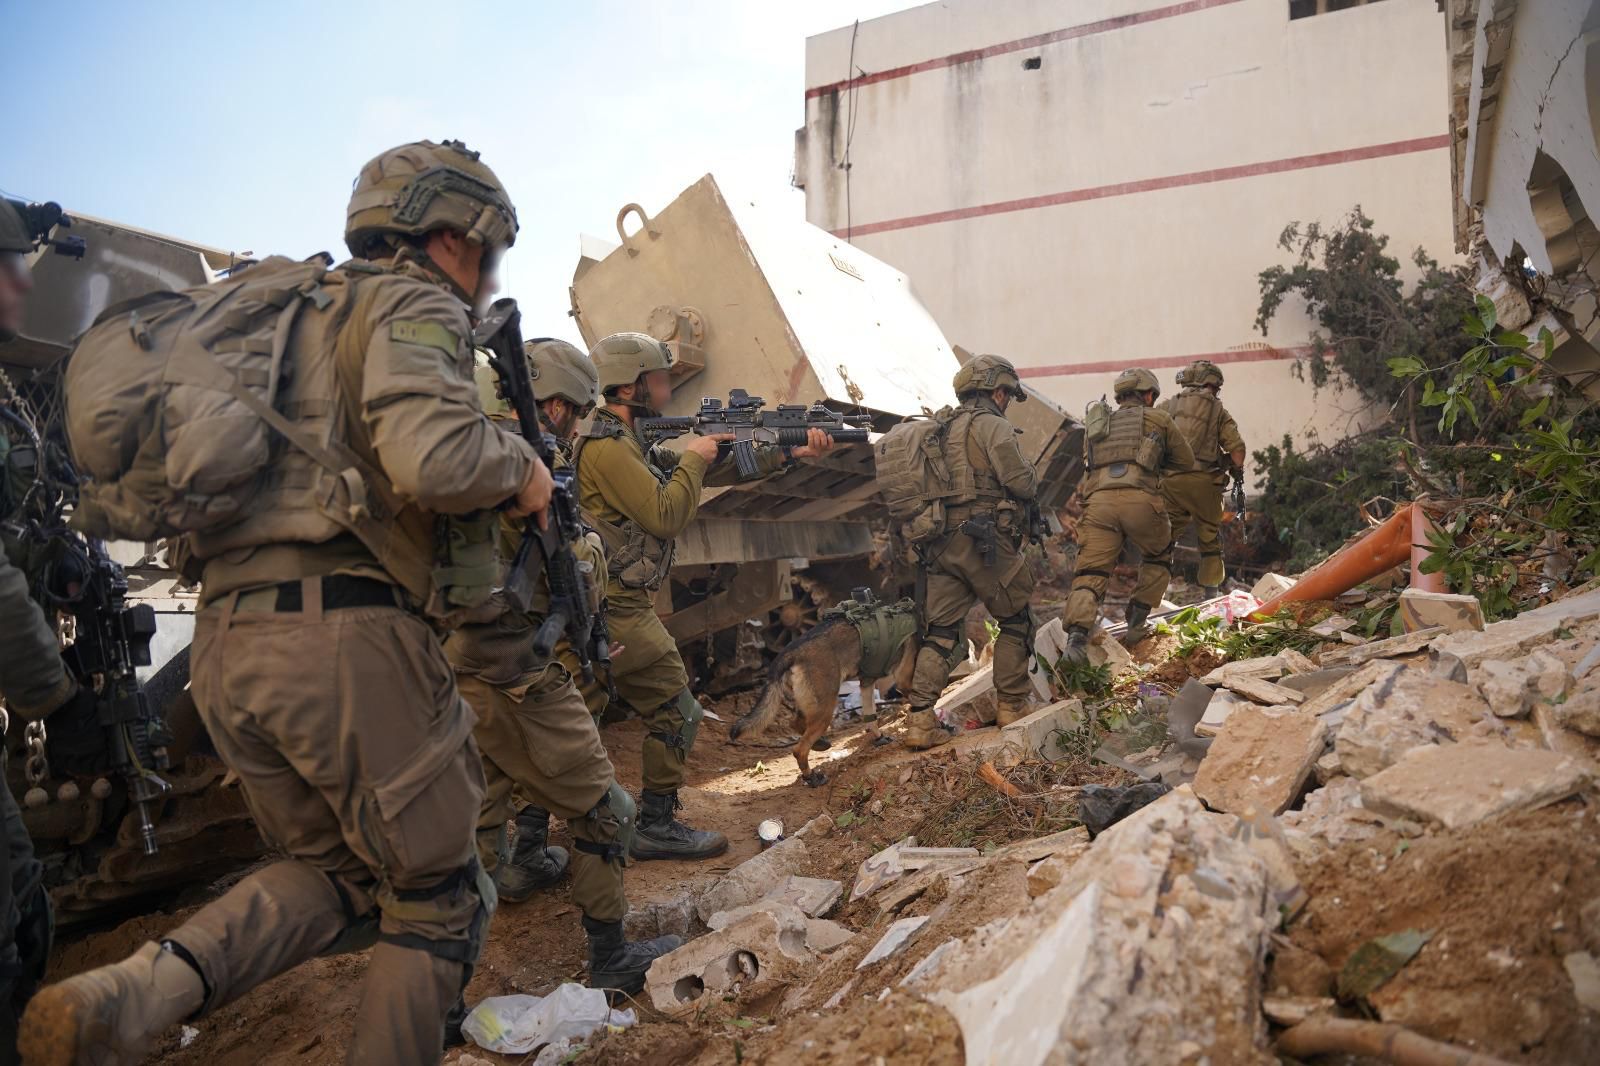 سمح بالنشر سقوط  الجندي الاحتياط في جيش الدفاع موتي رافيه في معركة جنوبي قطاع غزة